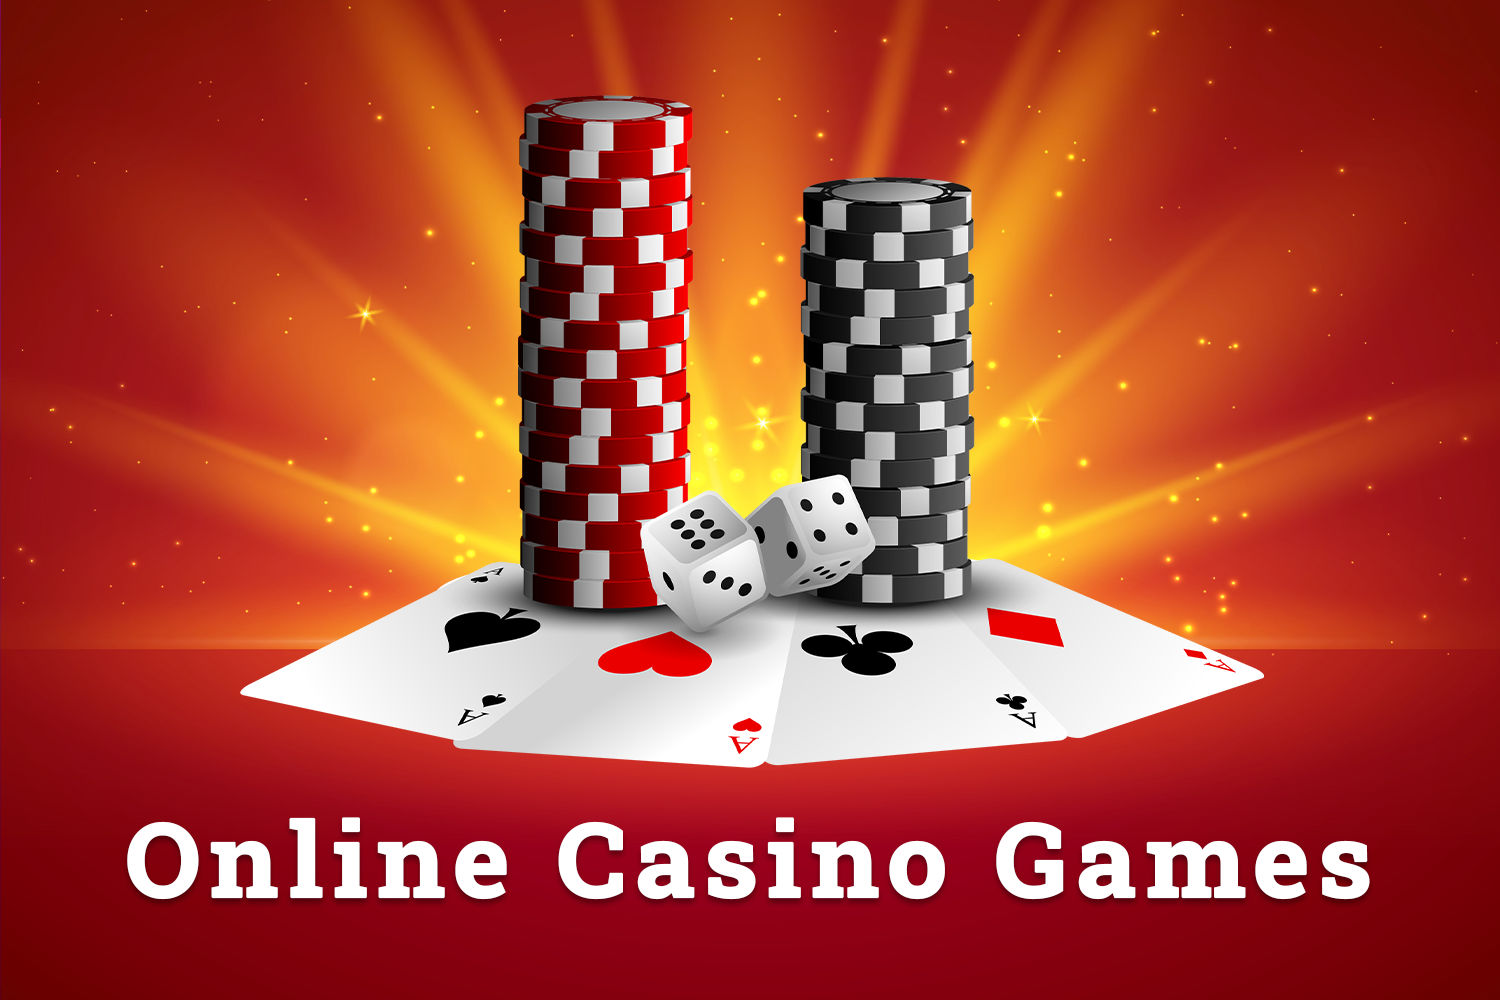 Online casino games zdyvtoxma